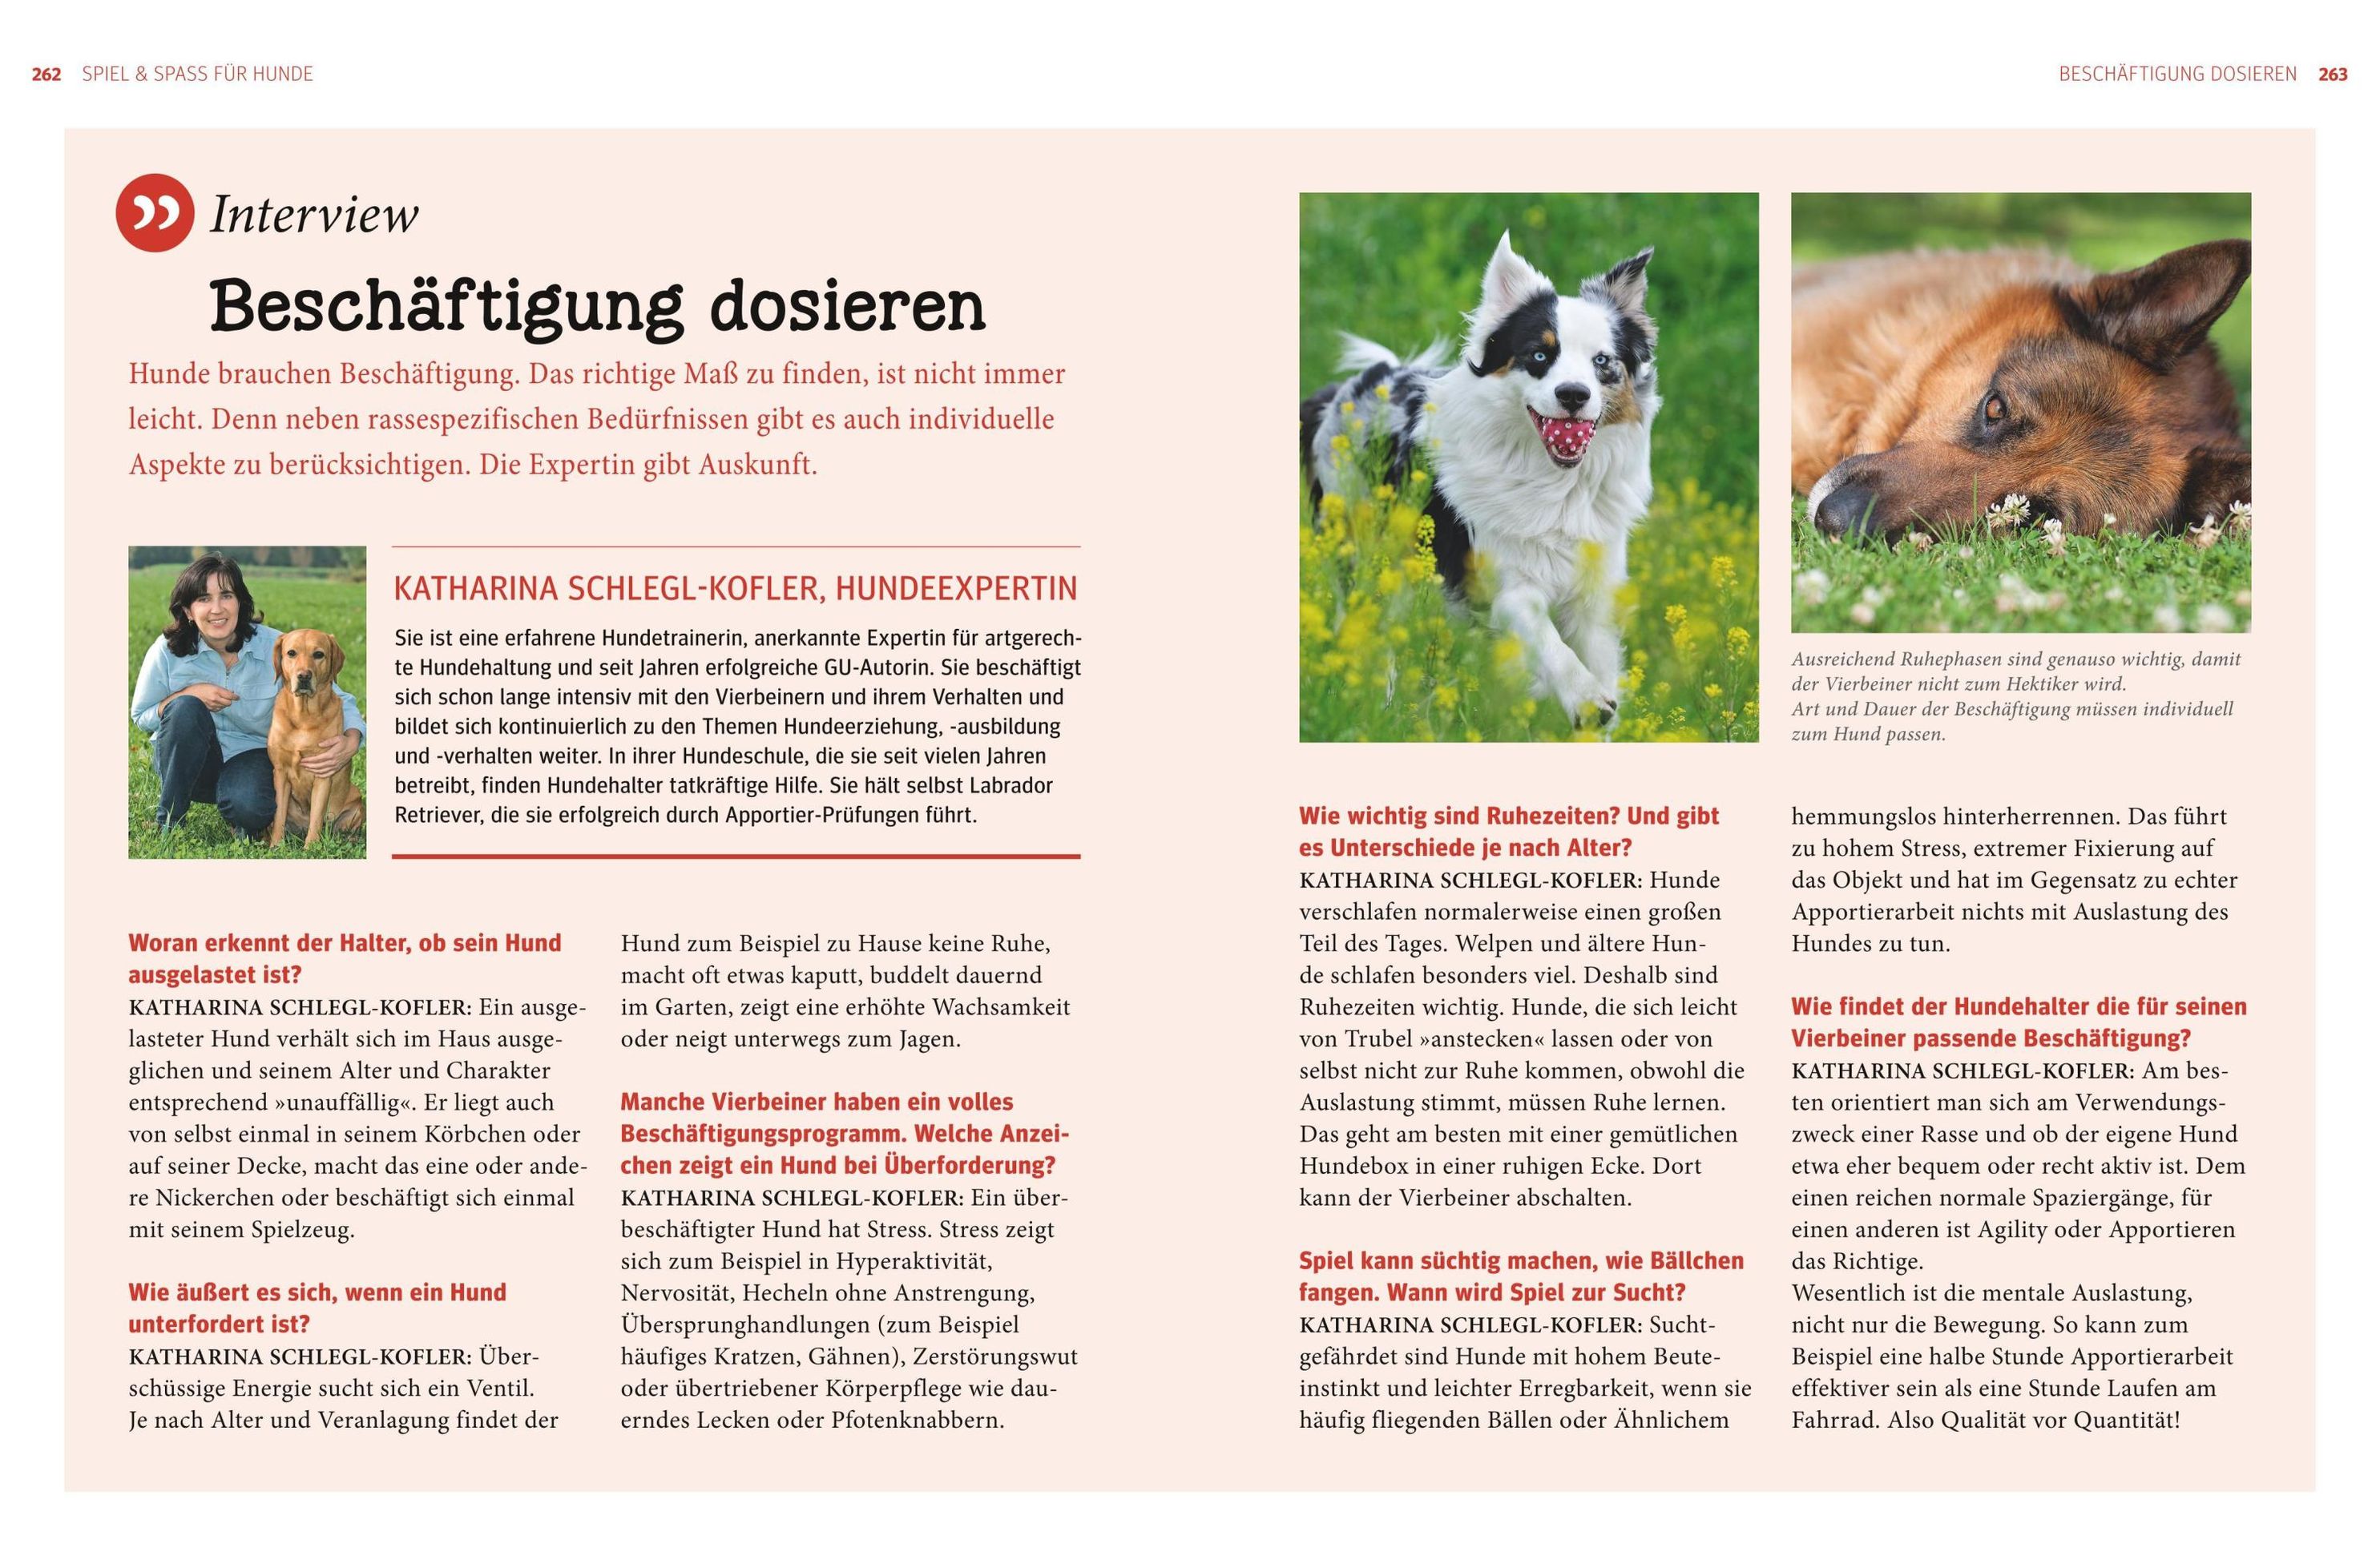 Hunde - Das grosse Praxishandbuch Buch bei Weltbild.ch bestellen